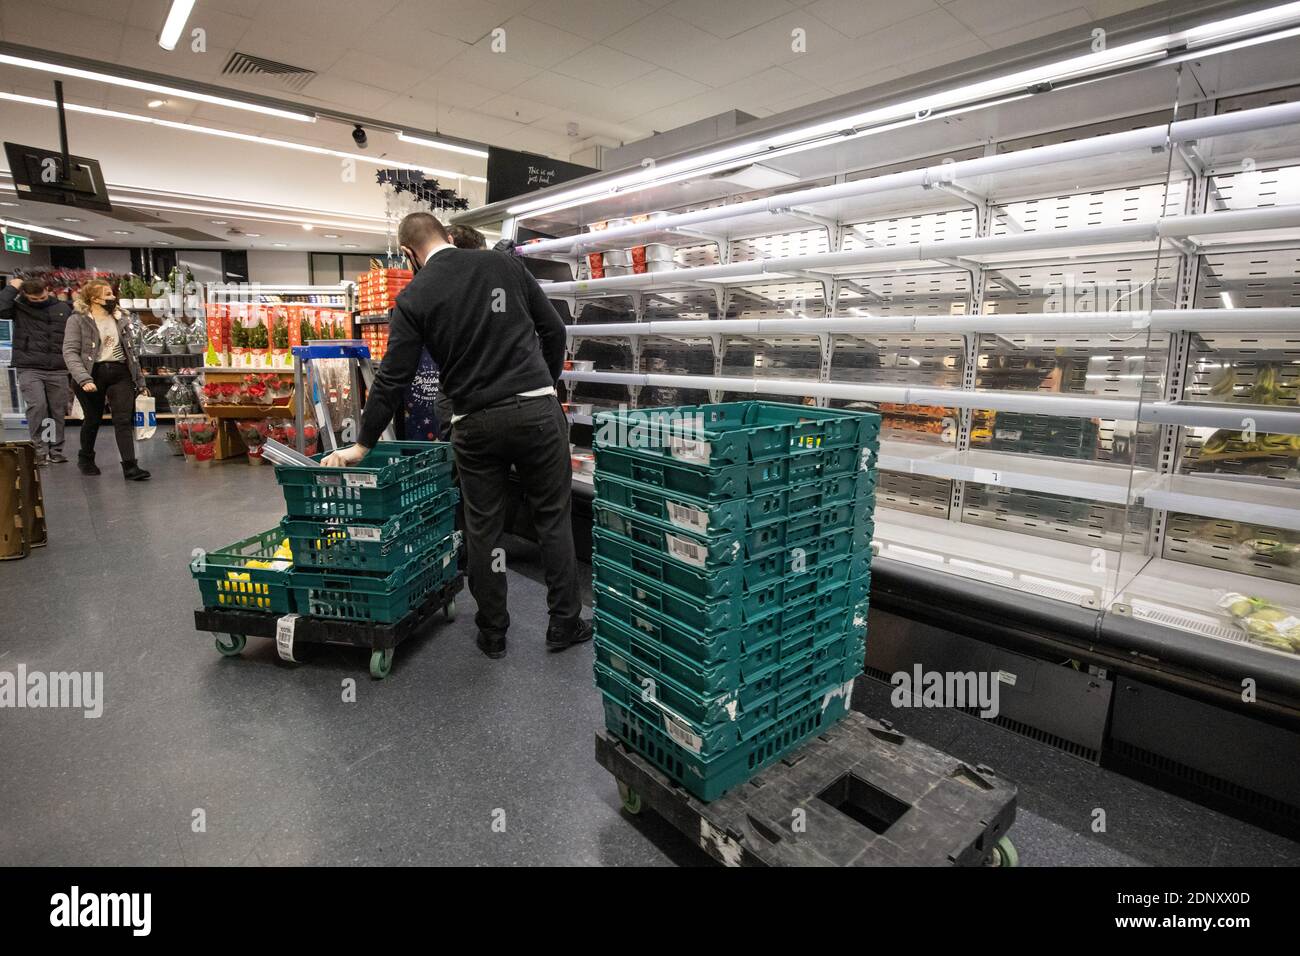 Leere Lebensmittelregale in einem M&S-Supermarkt während des Aufbaus bis zur Weihnachtswoche, da die EU-Grenzen geschlossen sind und Lastwagen nicht in der Lage sind, Waren zu liefern. Stockfoto